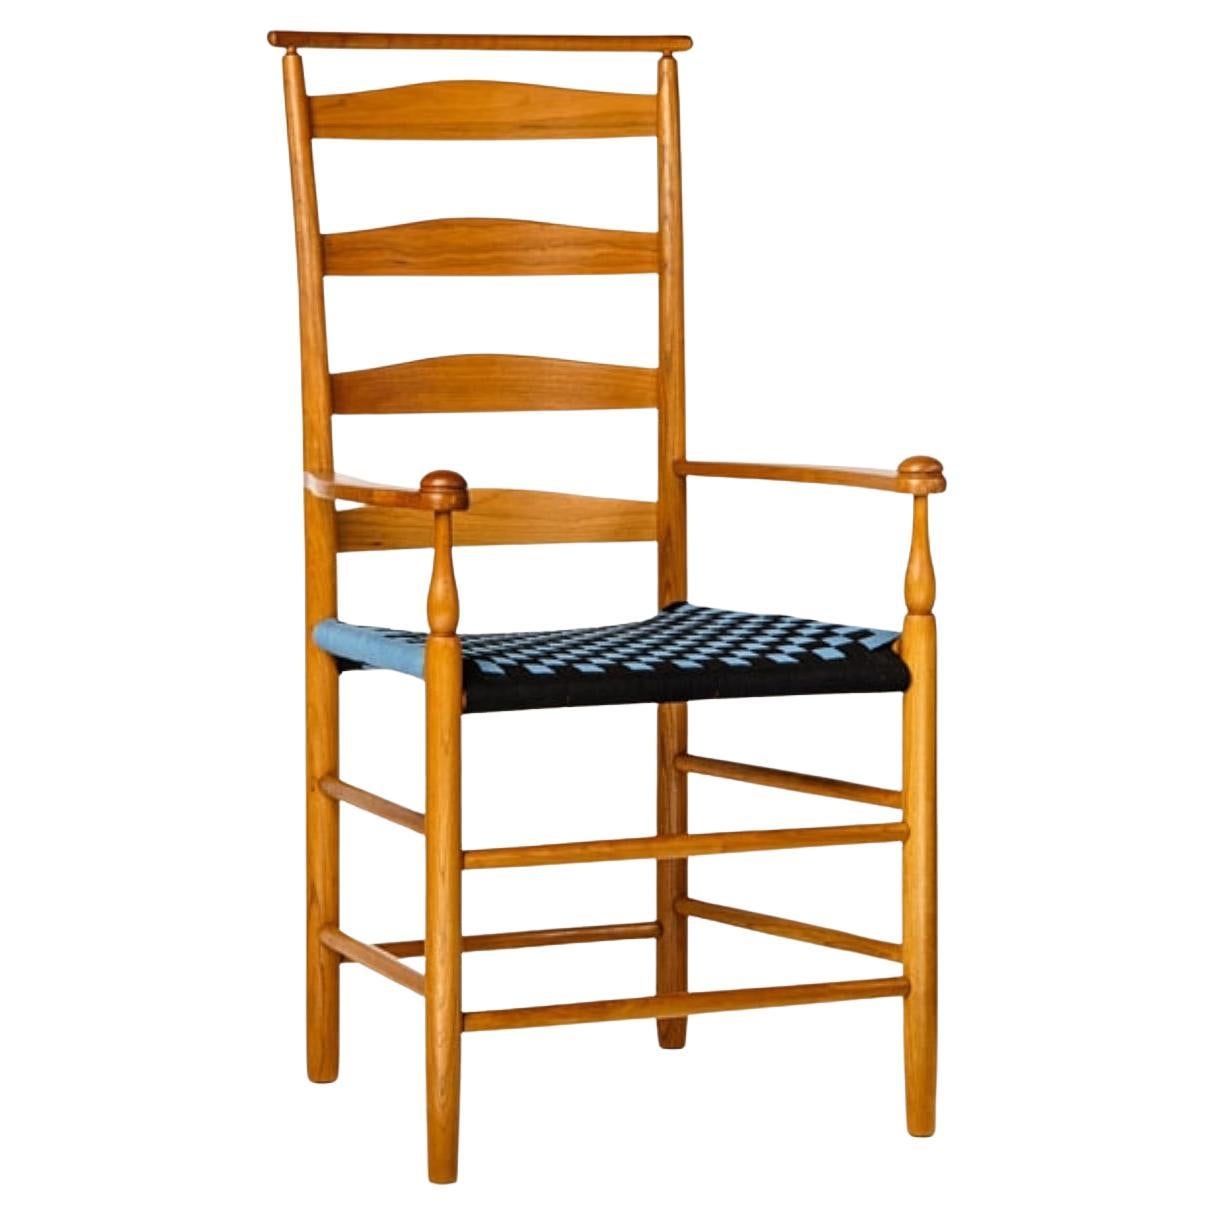 Die Shakers haben ihre Stühle im 19. Jahrhundert sowohl im Design als auch in den Proportionen verfeinert, weil sie der Meinung waren, dass die einfachsten Dinge die schönsten sind. Einer der Vorteile beim Kauf unserer Esszimmerstühle im Shaker-Stil